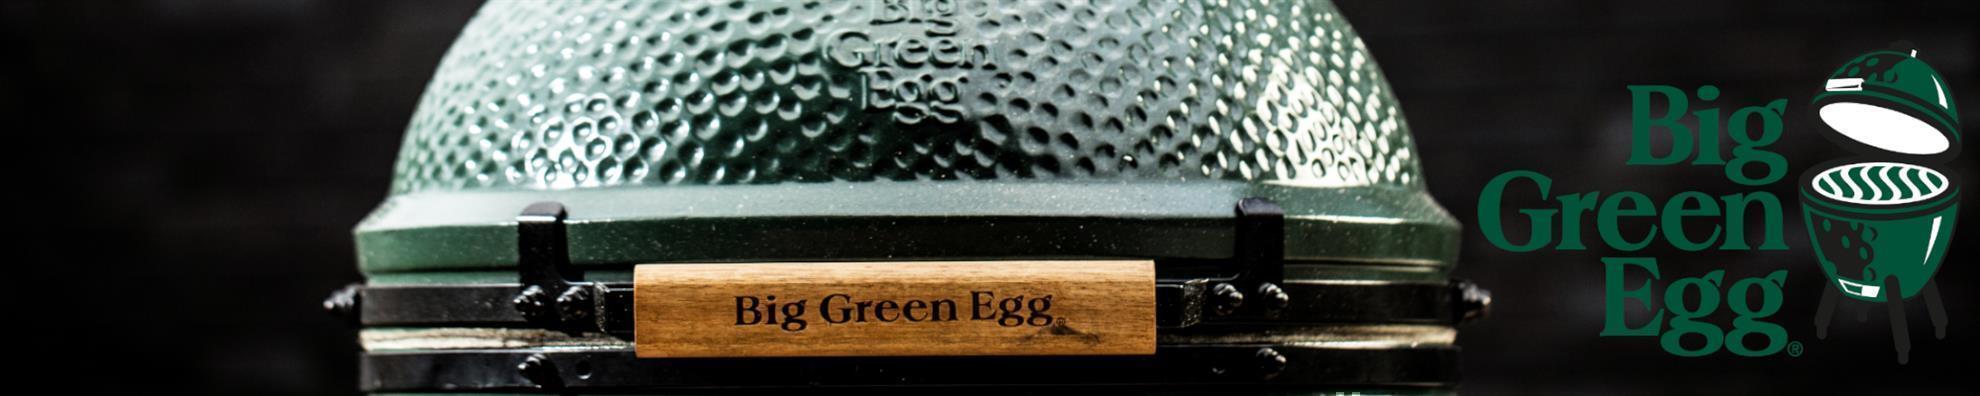 Big Green Egg - Calzone-Presse 16 cm